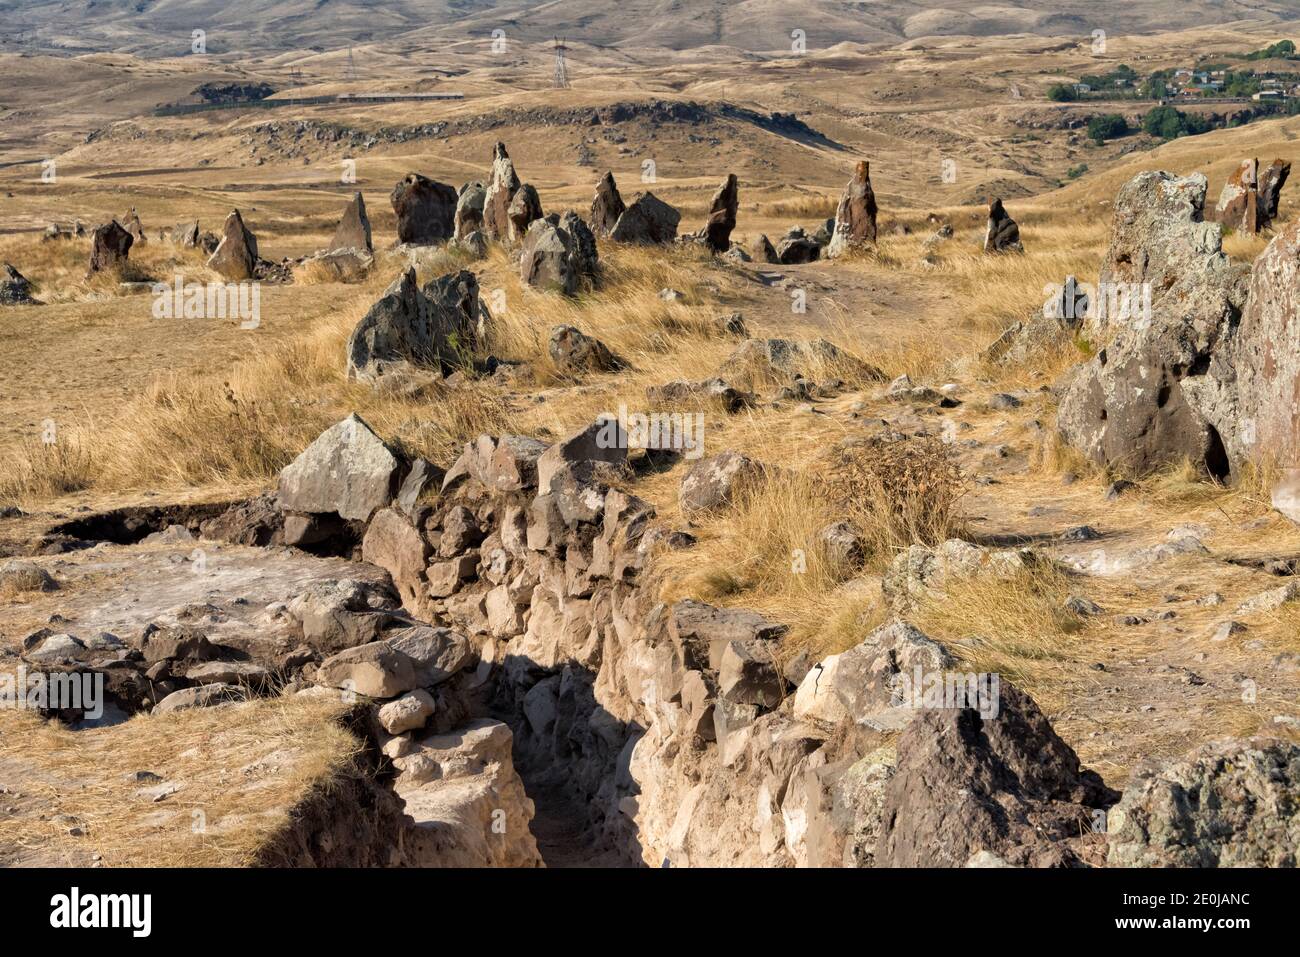 Armenian Stonehenge, Zorats Karer (également appelé Karahunj, Qarahunj ou Carahunge et Carenish), site archéologique préhistorique près de Sisian, Syunik Pr Banque D'Images